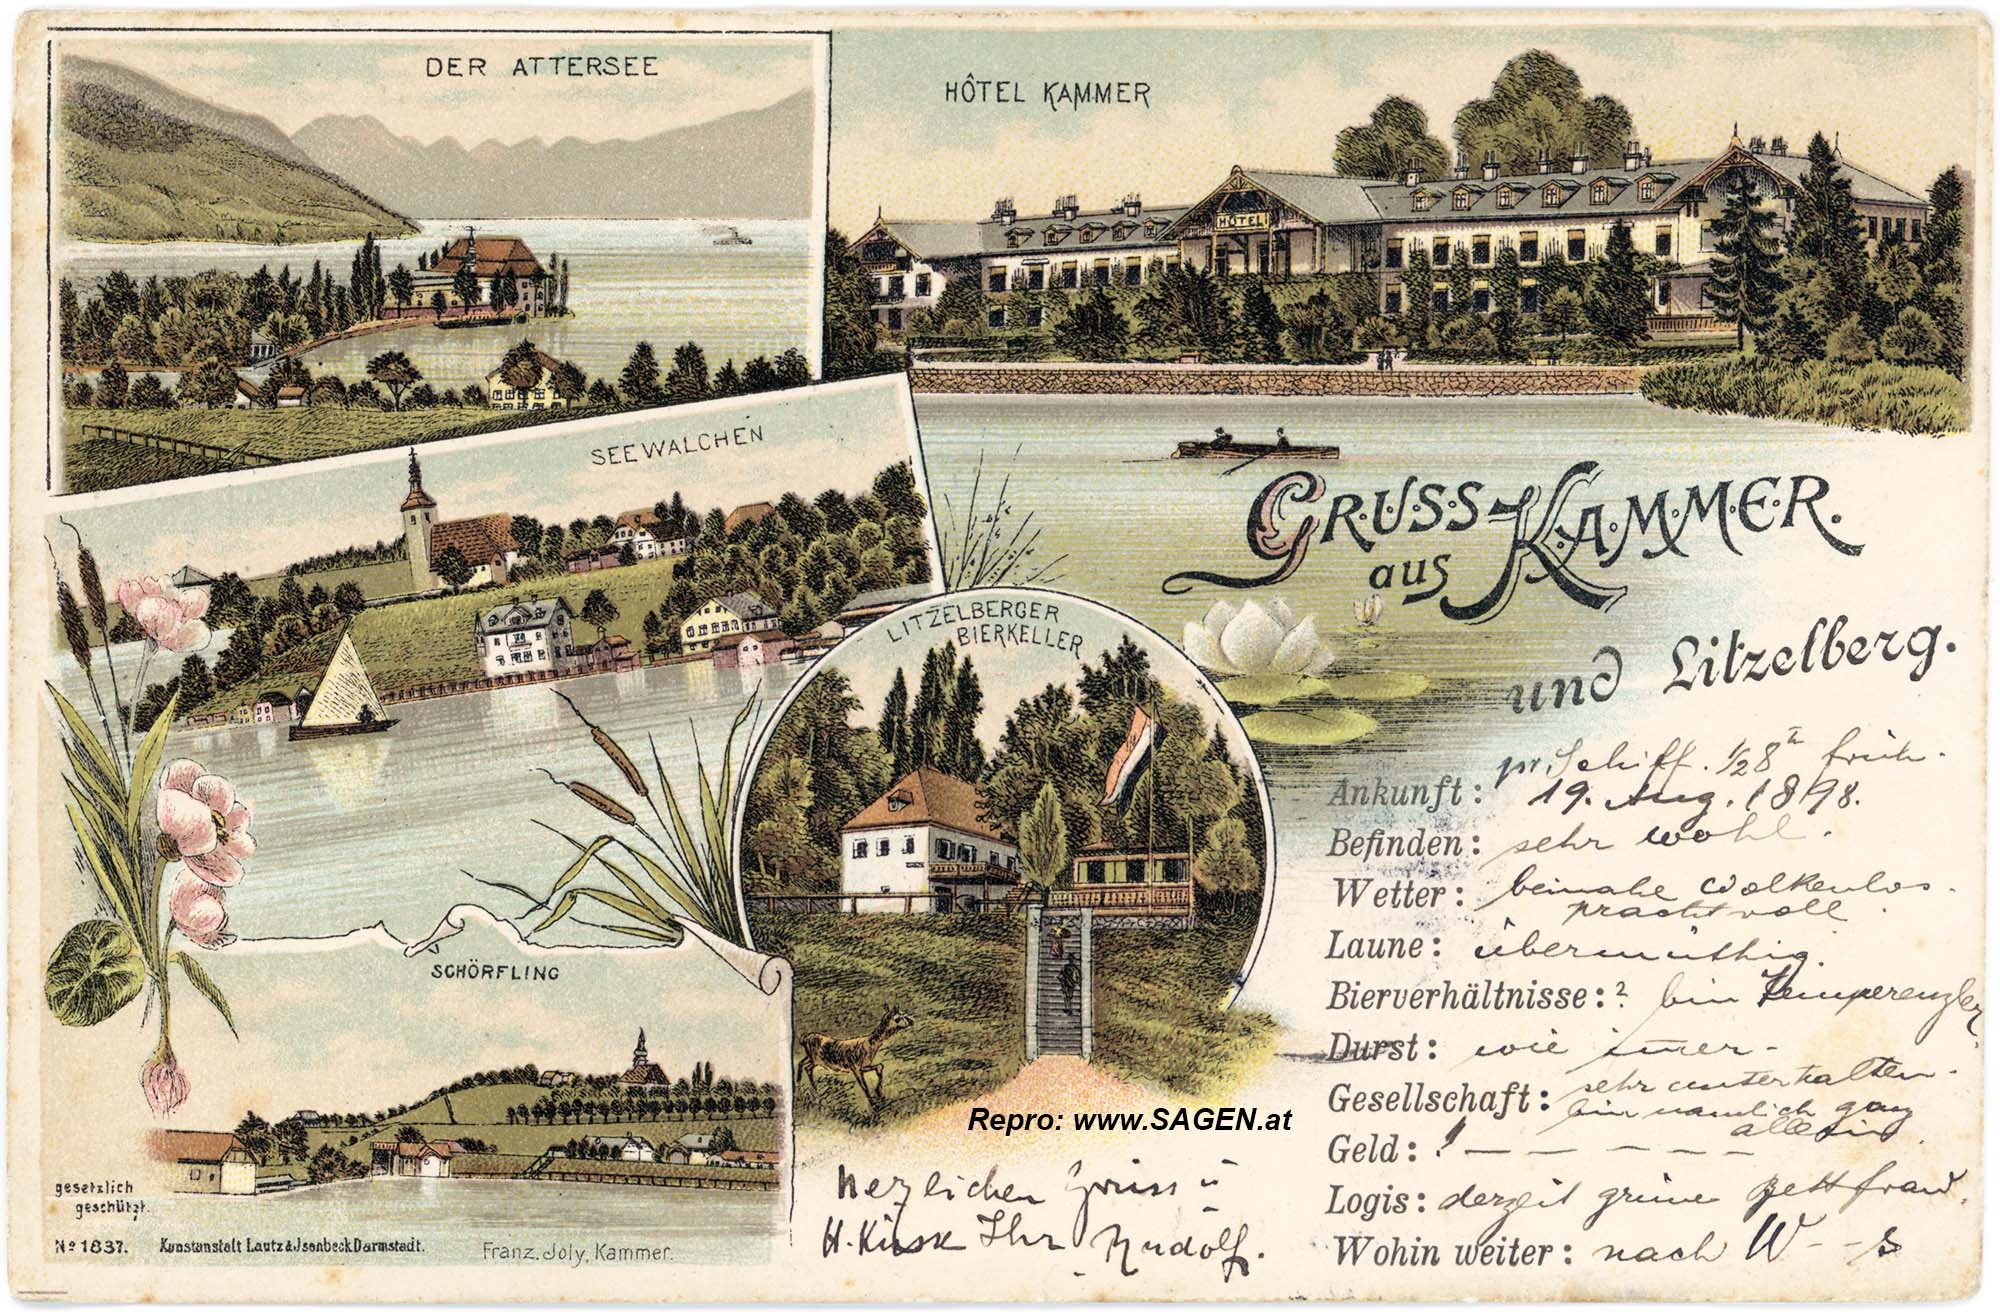 Gruß aus Kammer und Litzelberg, Scherzkarte um 1898